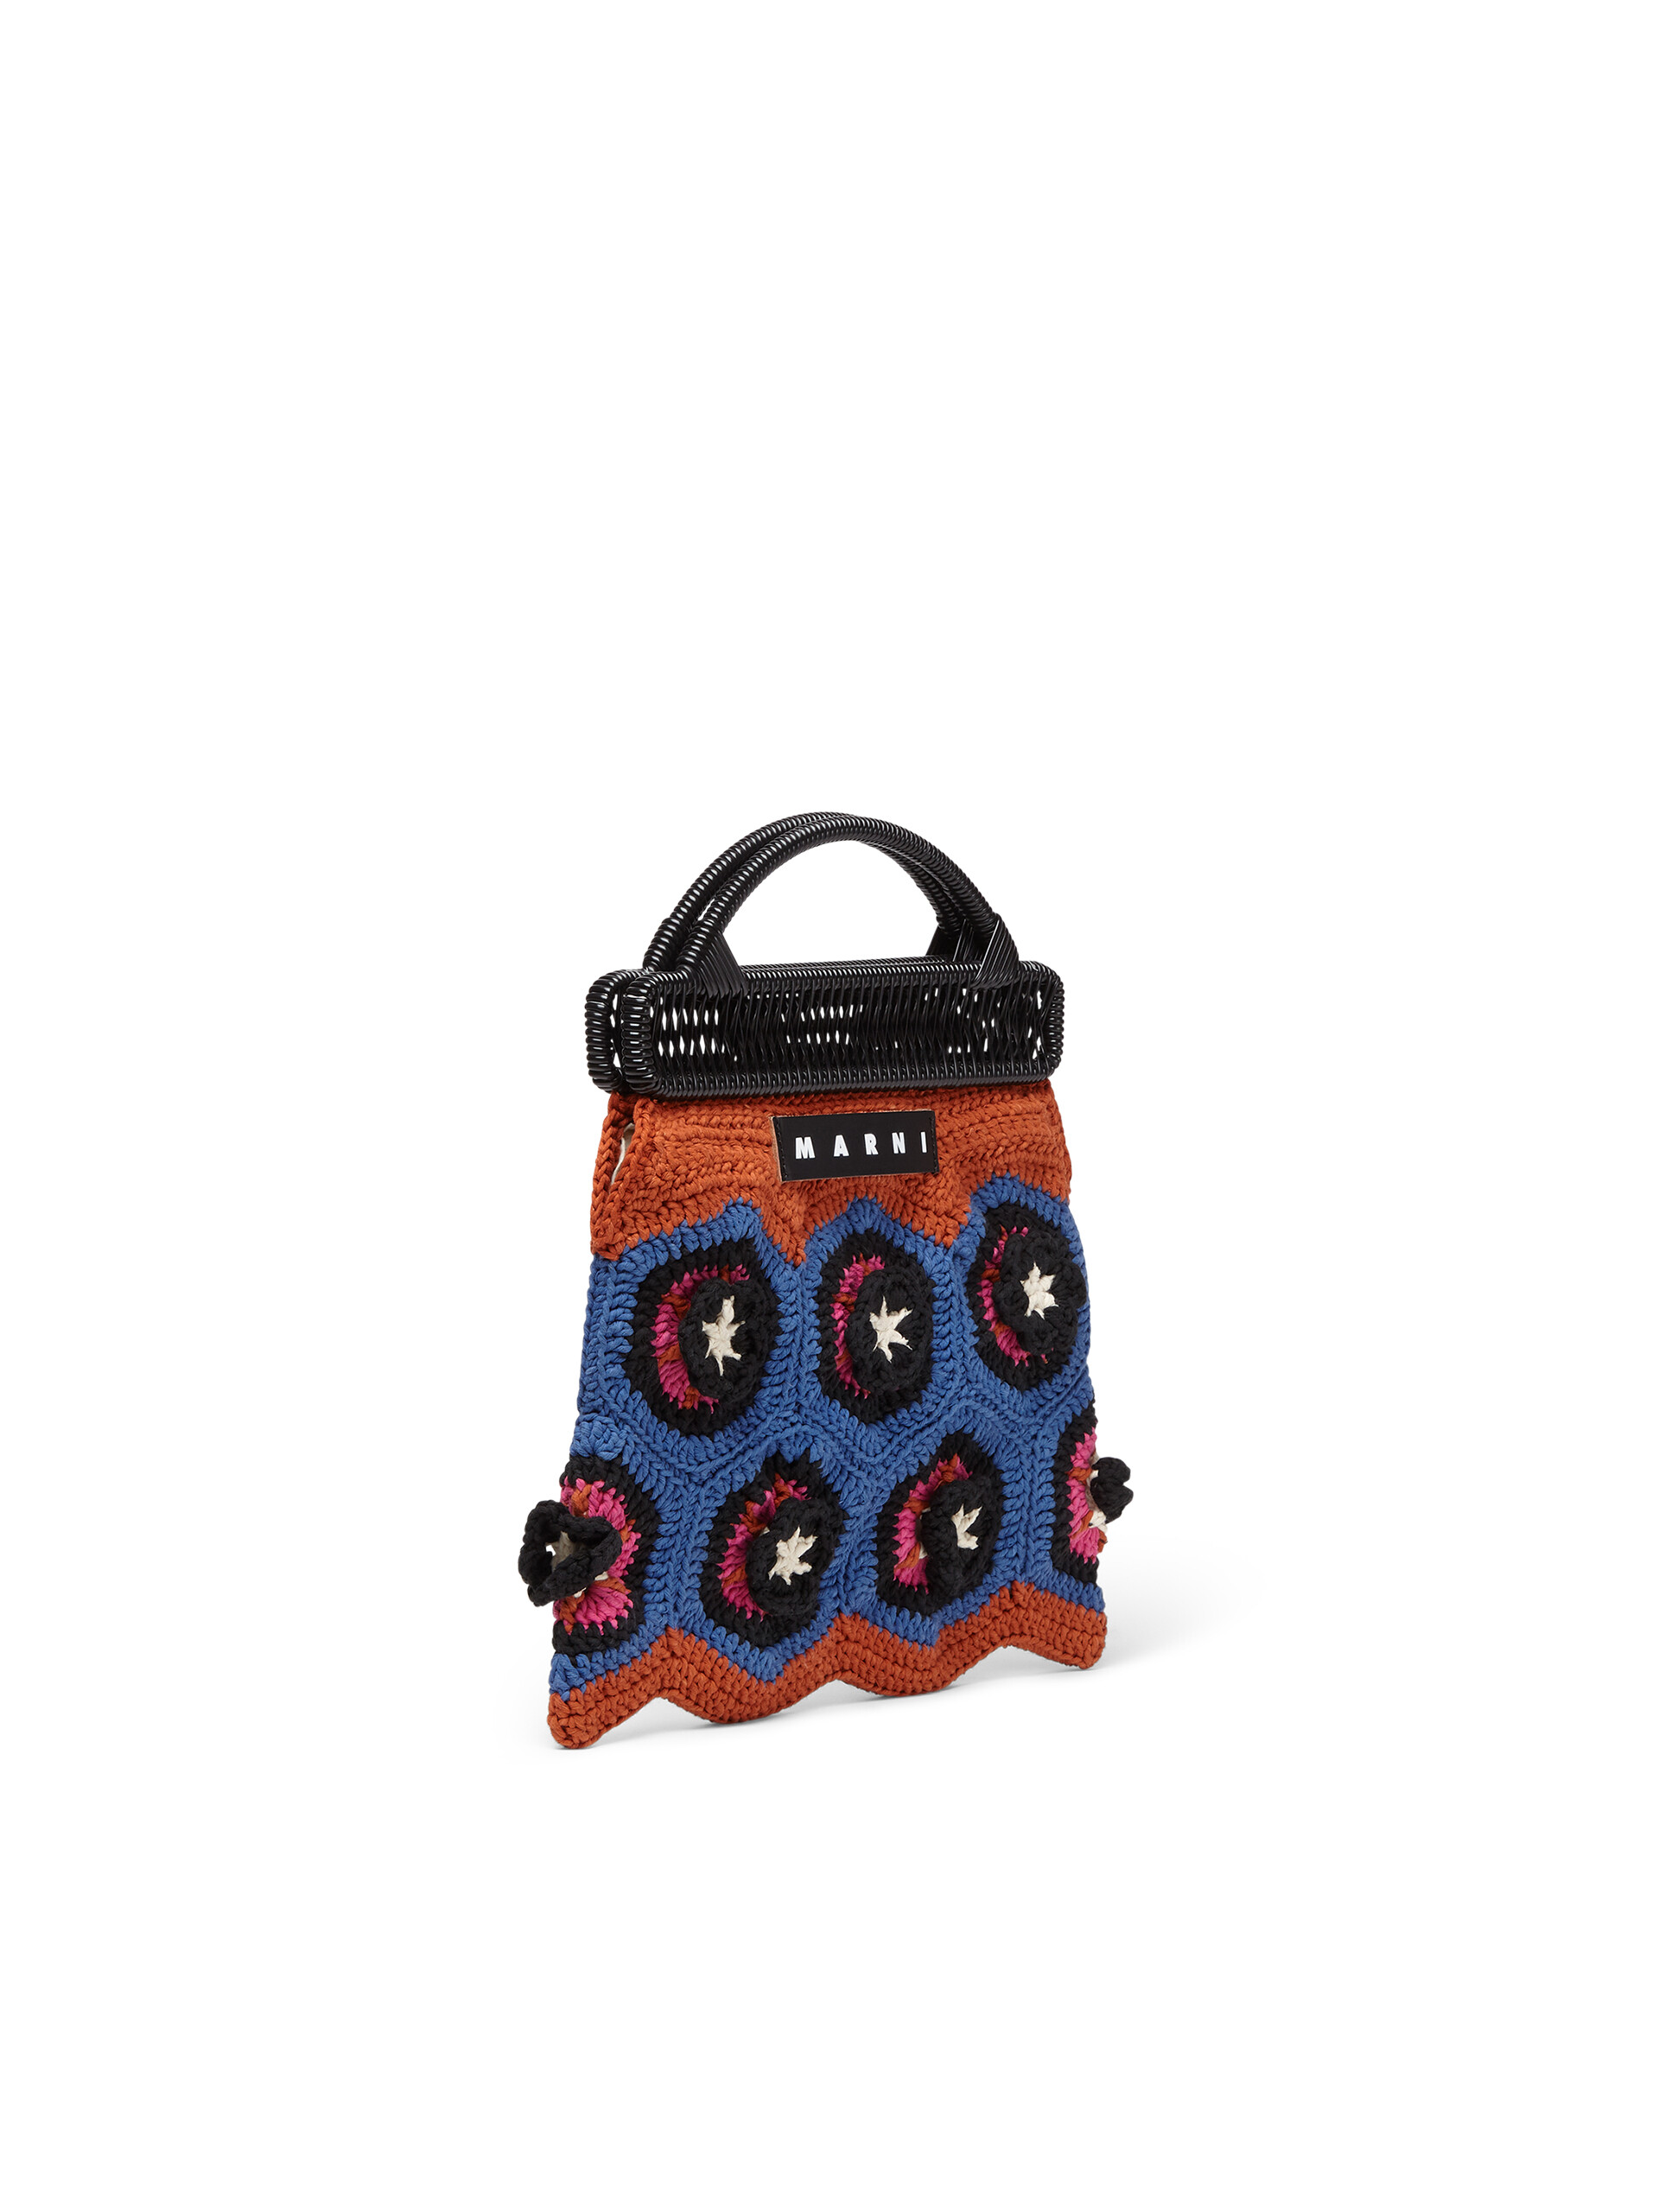 MARNI MARKET CROCHET bag in orange and blue crochet cotton | Marni